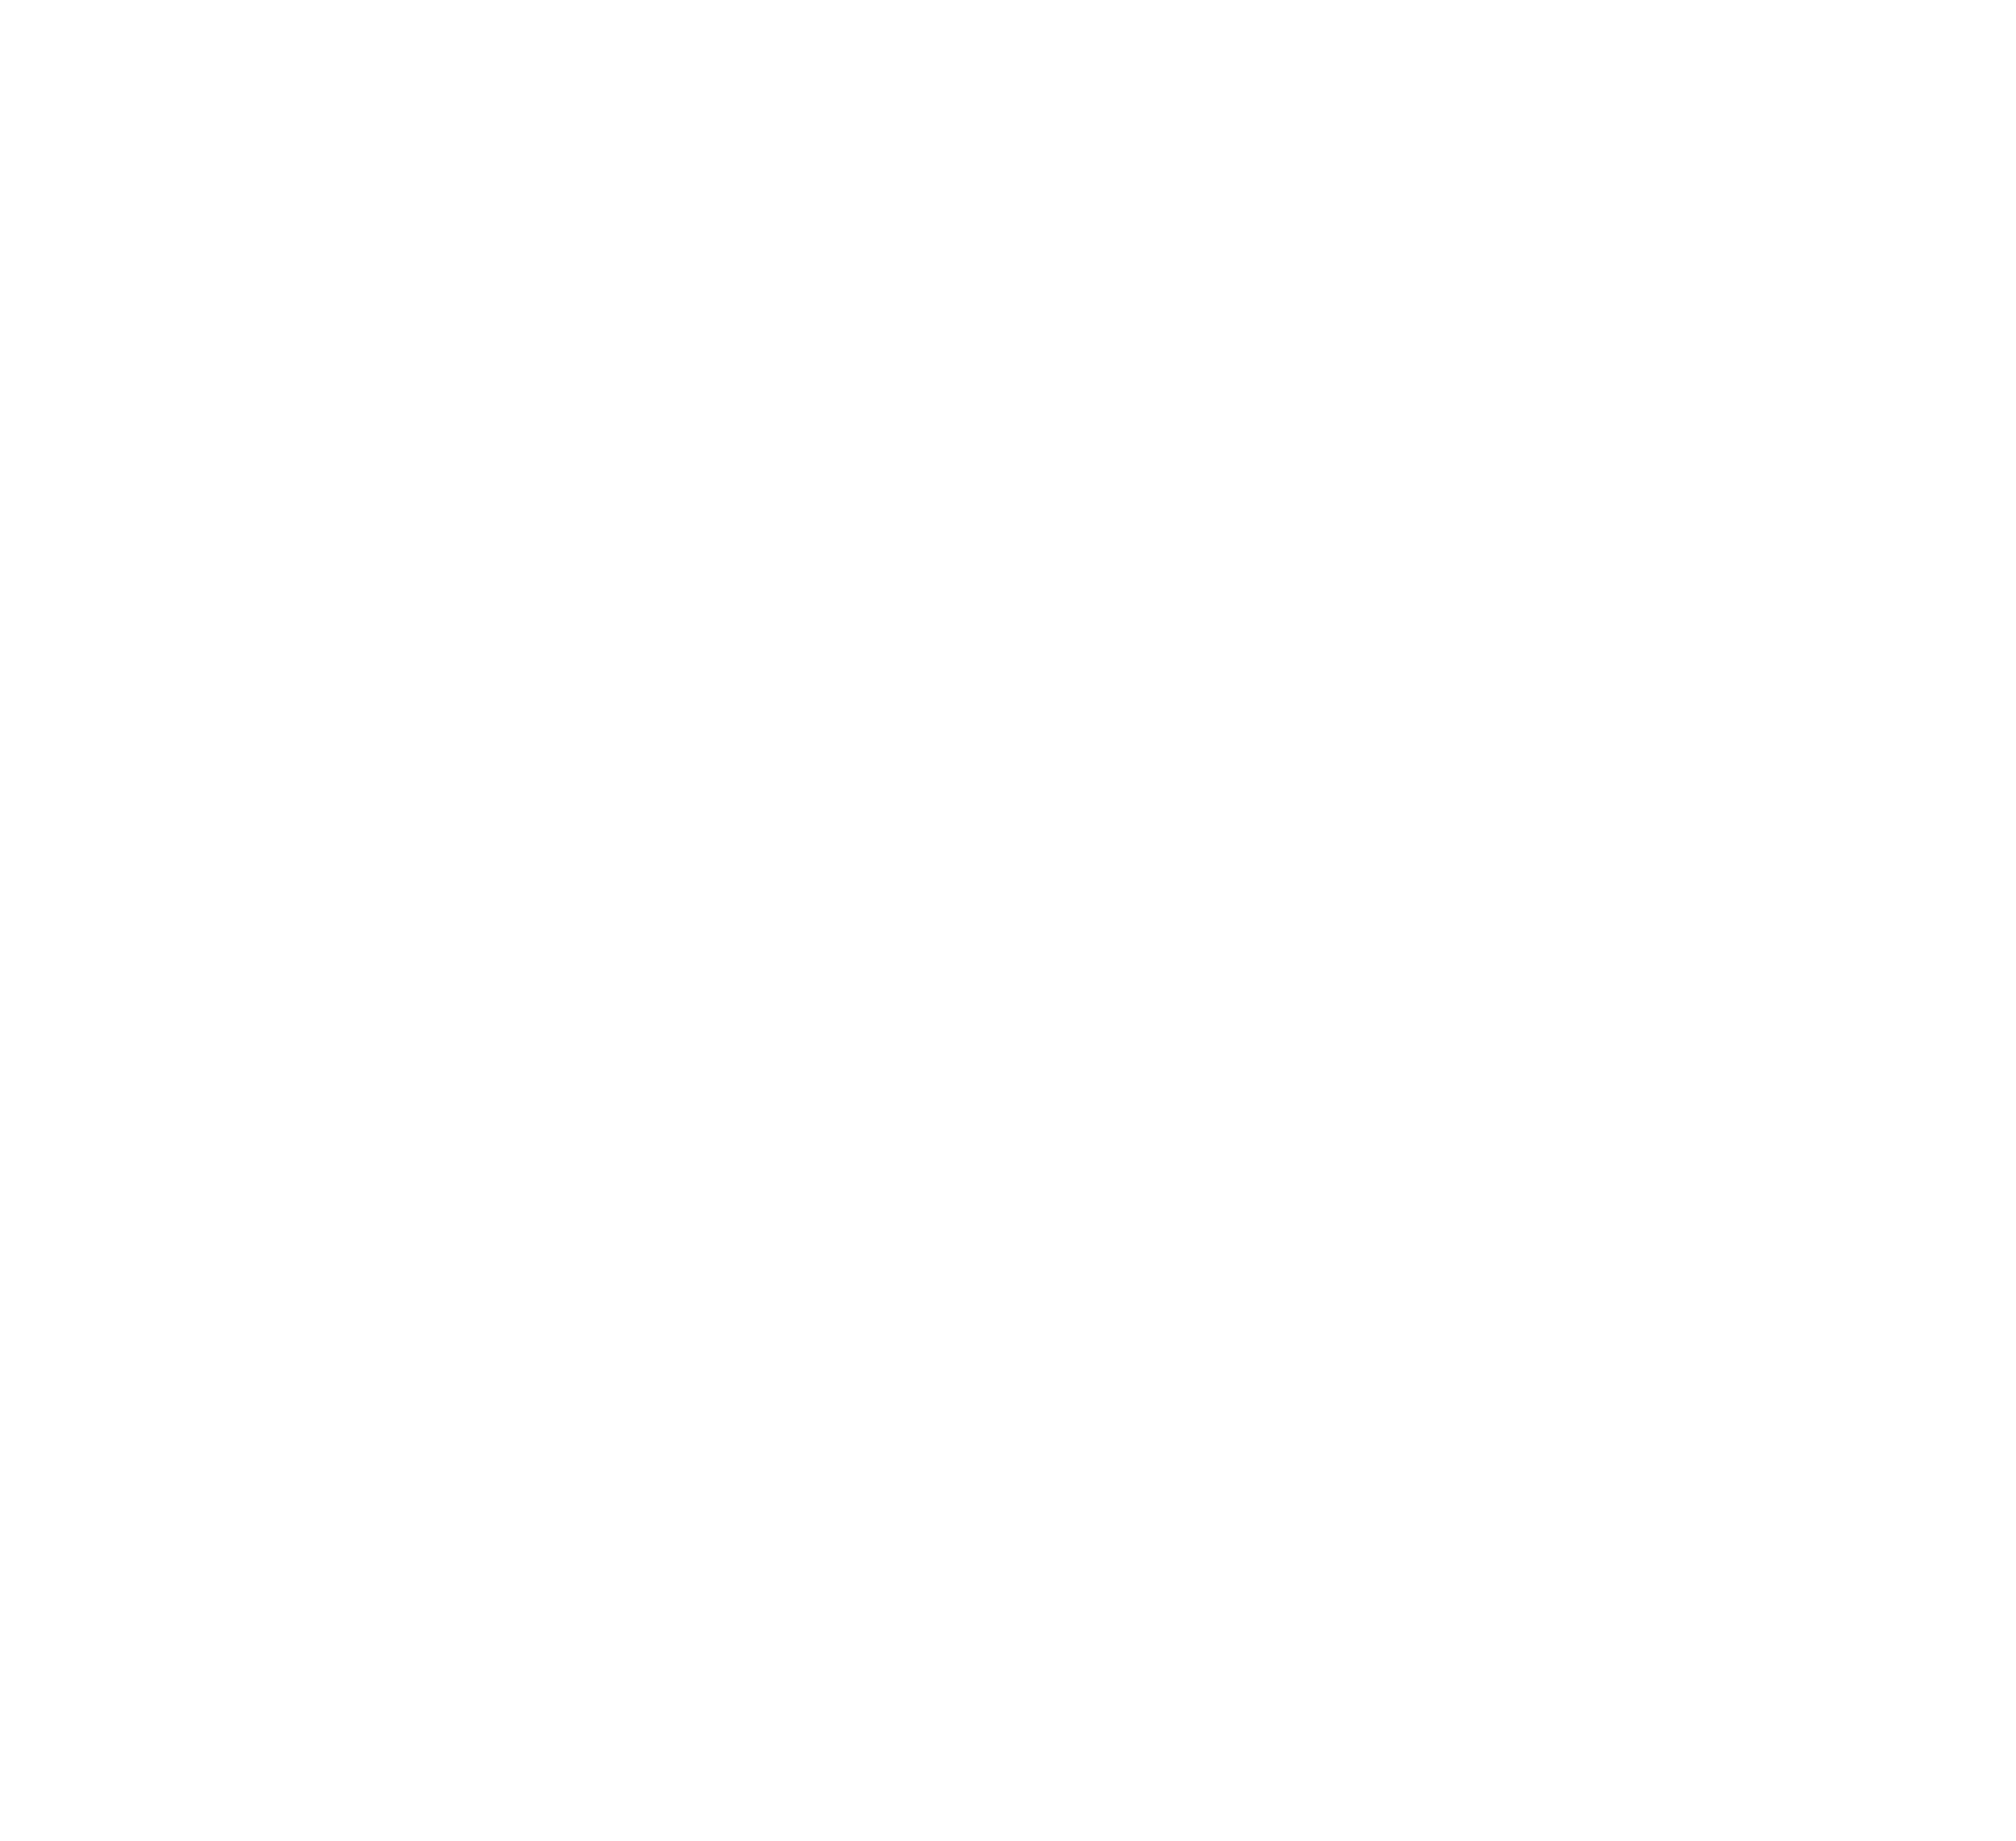 Duck Team 6 Street Dog Rescue